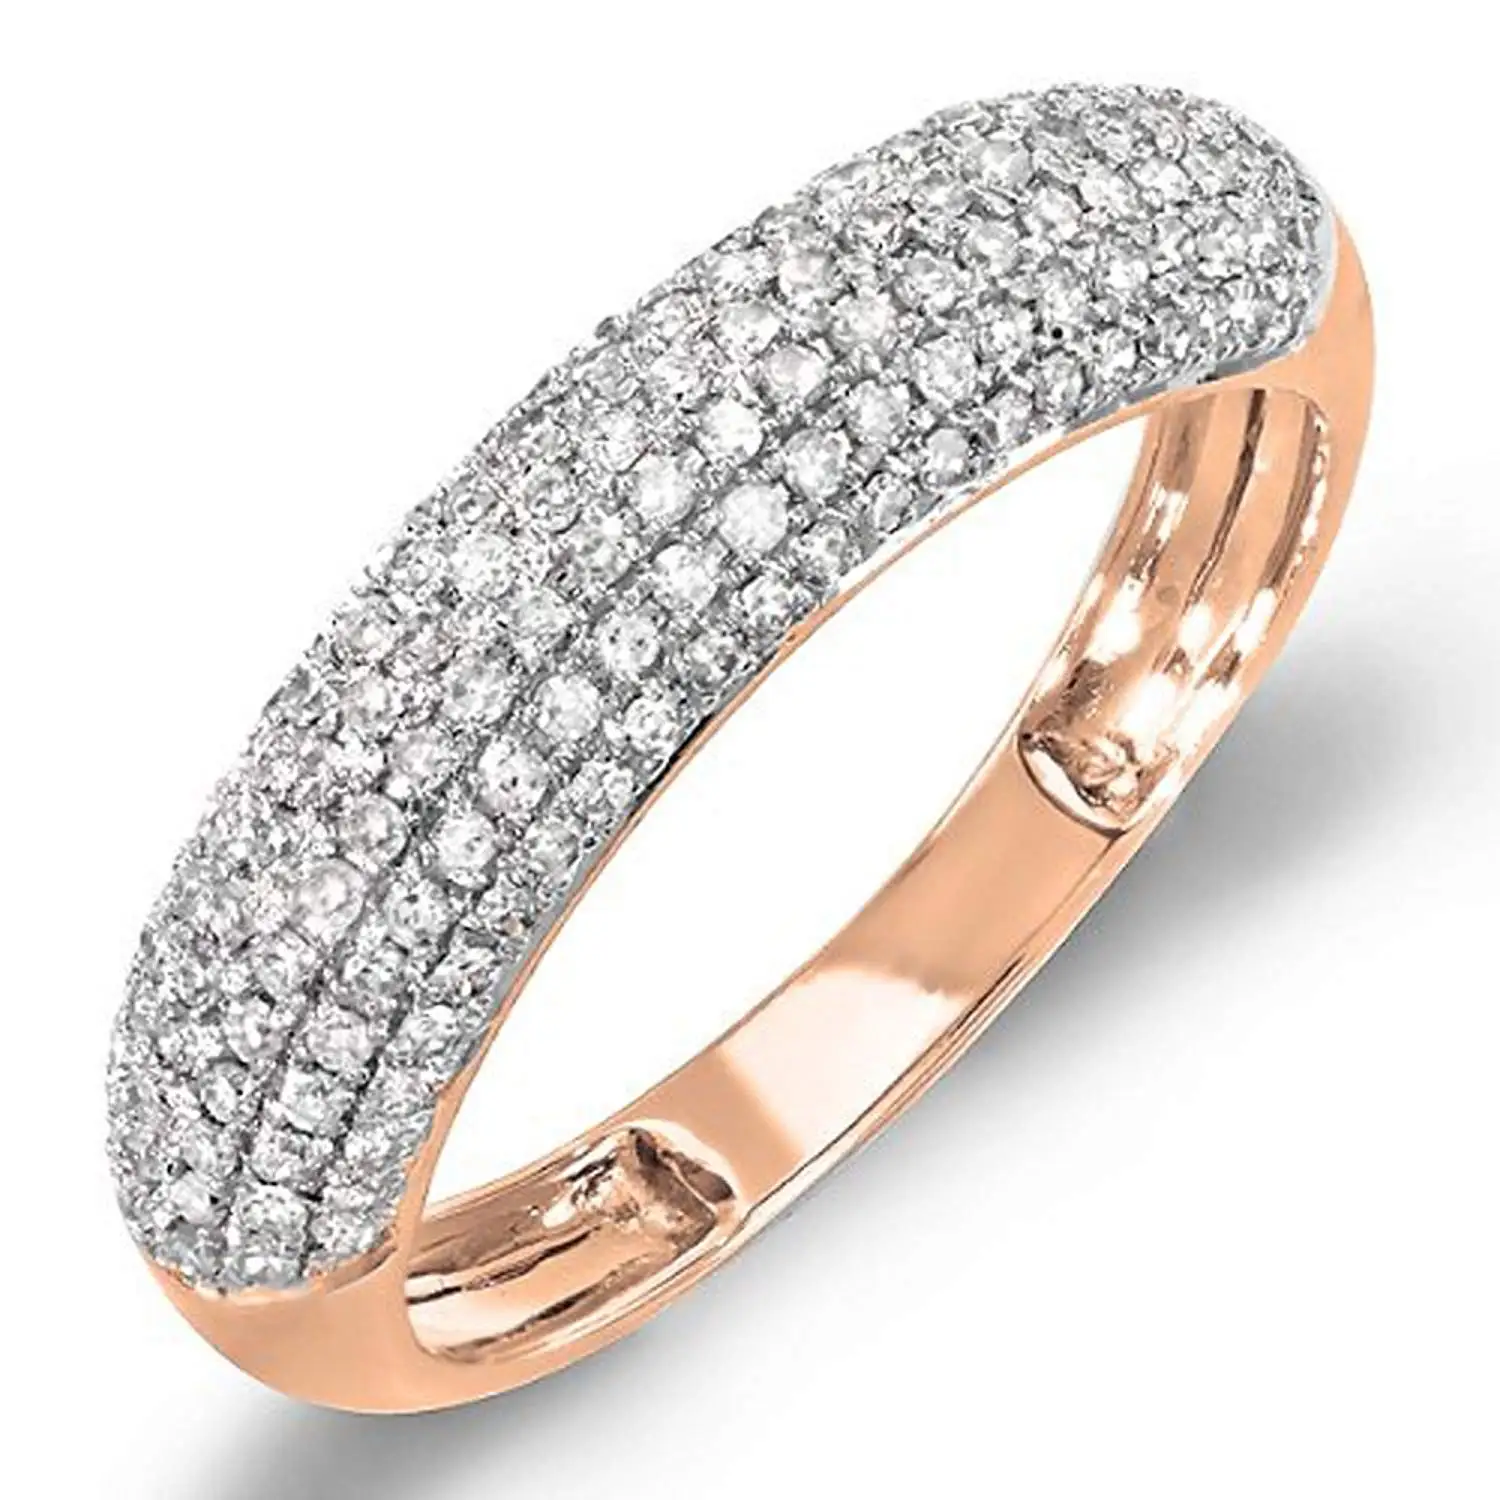 Кольцо с крошкой. Диамонд кольцо белое золото. Кольцо BVL k14 белое золото. Обручальное кольцо 1385603 1 1 1 с бриллиантовой крошкой. Диамонд кольцо с бриллиантами.